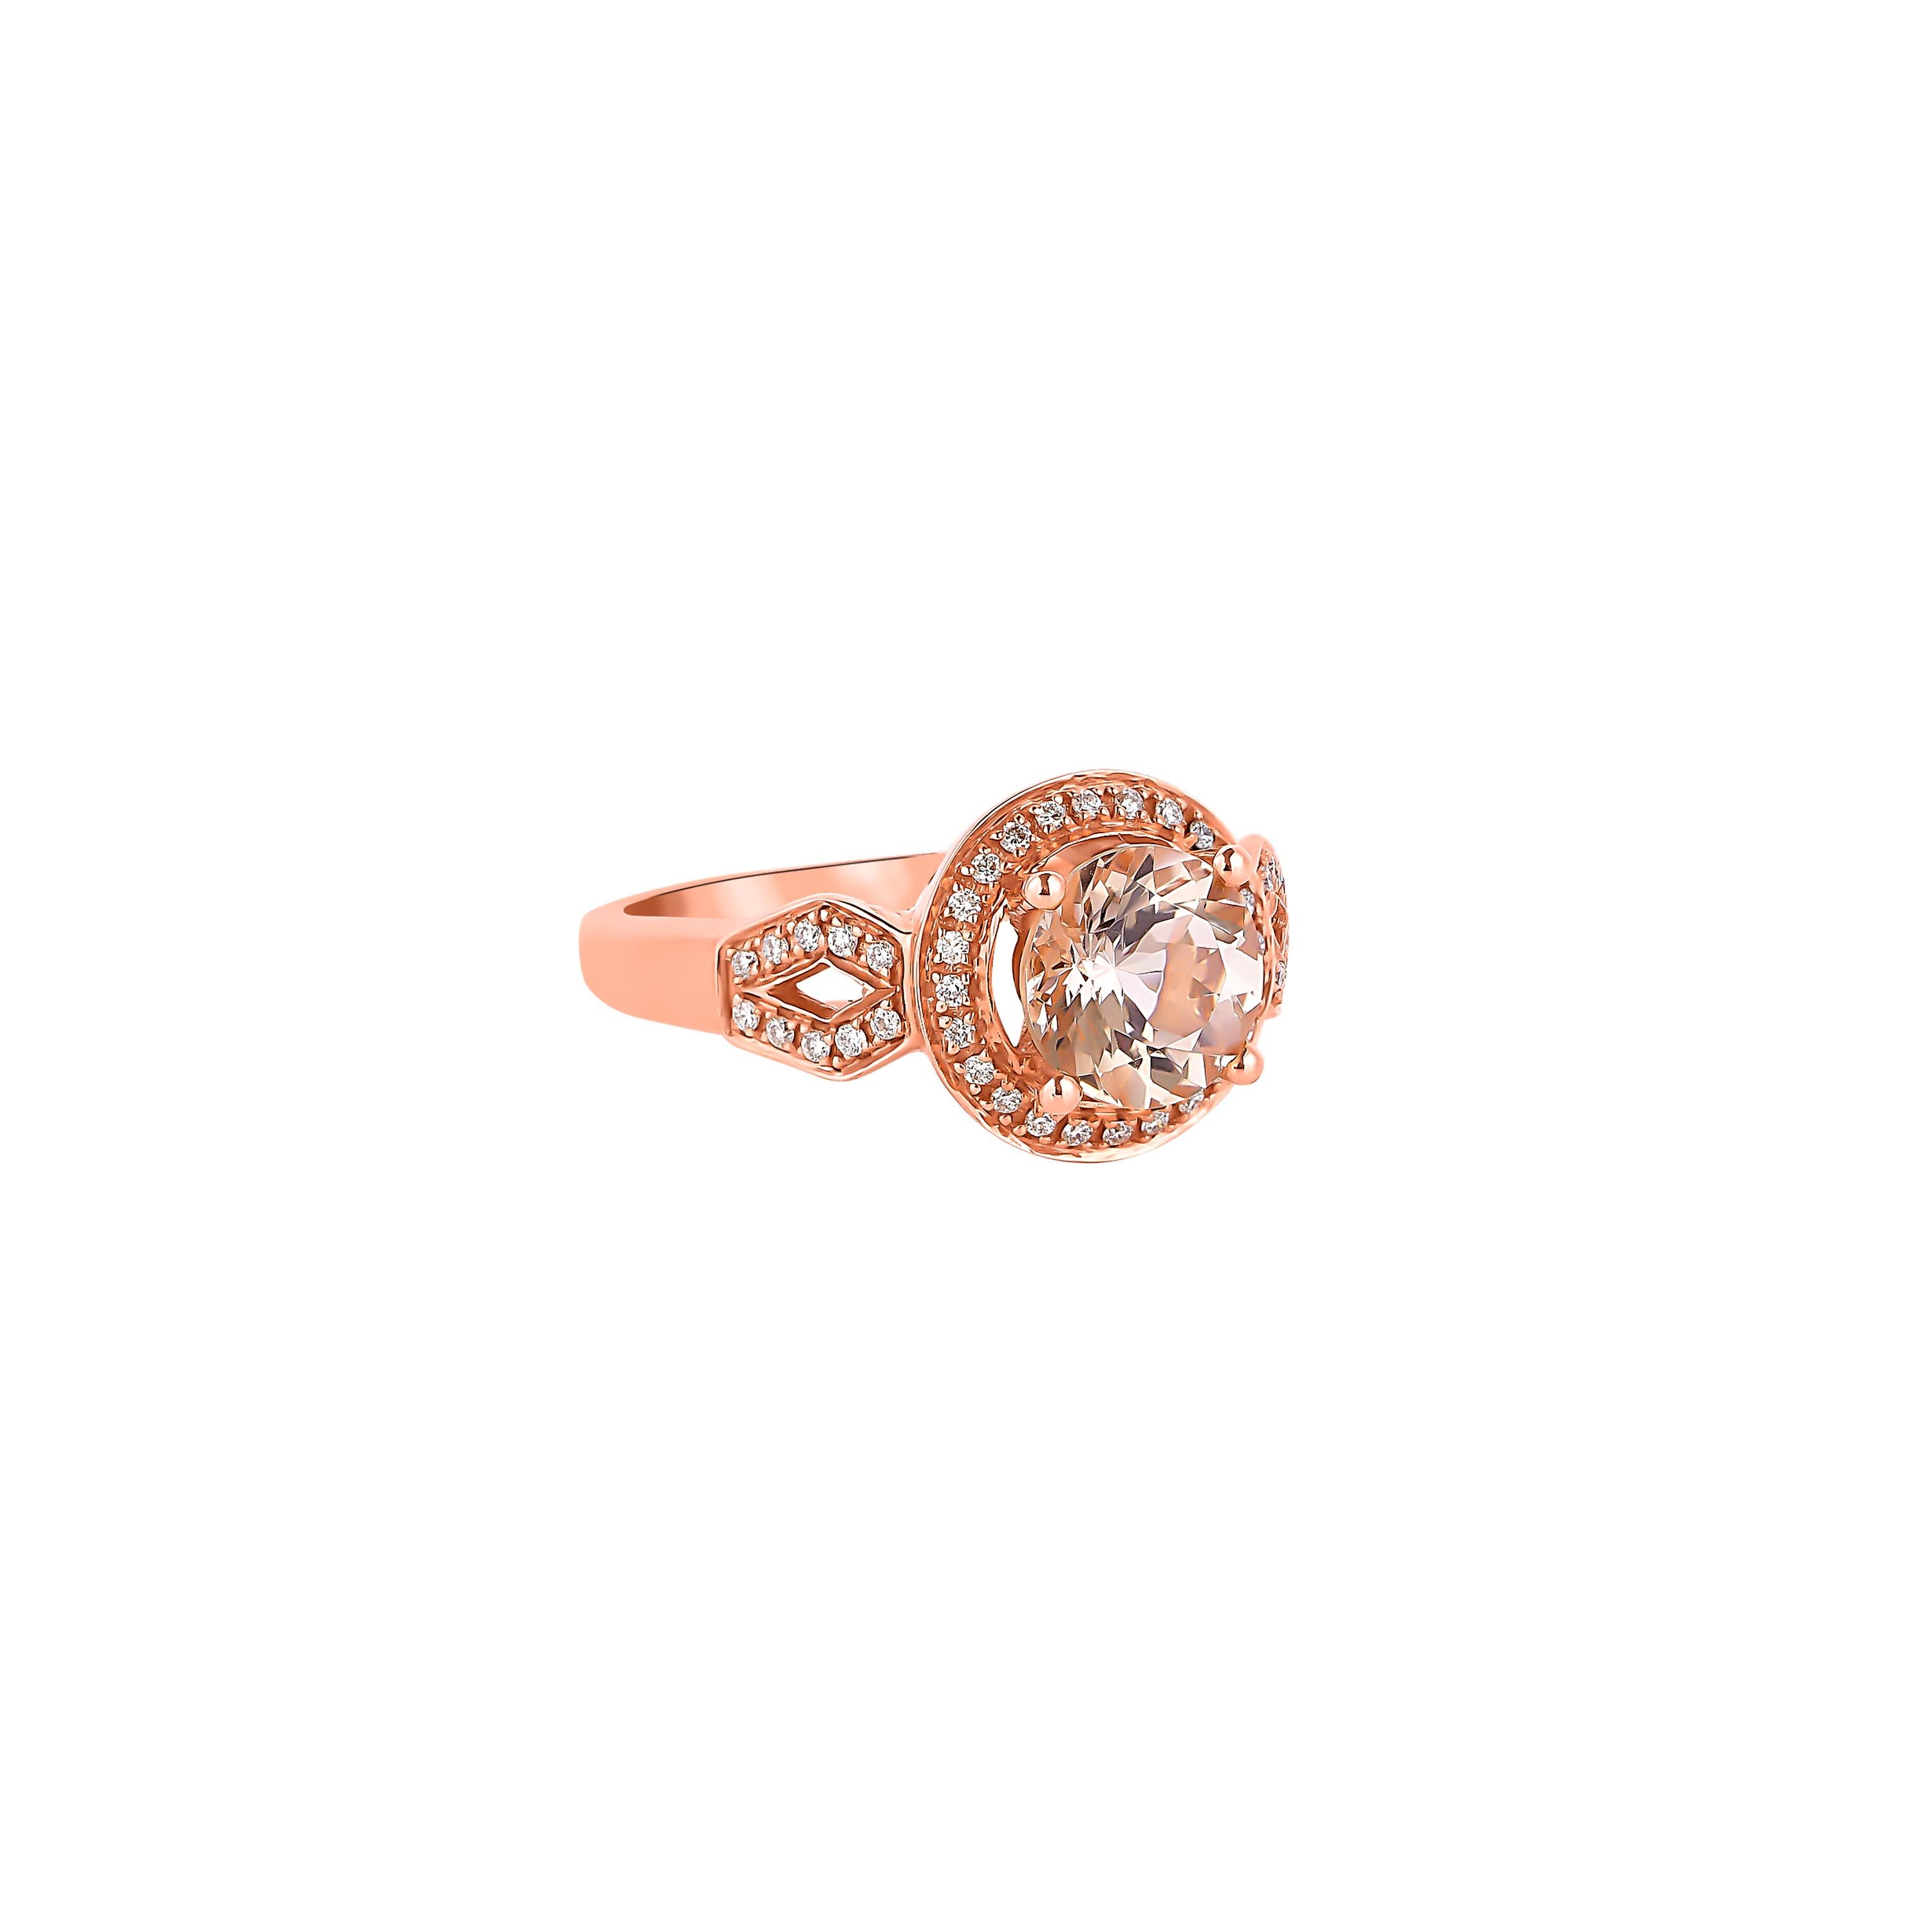 Diese Kollektion bietet eine Reihe von prächtigen Morganiten! Diese mit Diamanten besetzten Ringe sind aus Roségold gefertigt und wirken klassisch und elegant. 

Klassischer Morganit-Ring aus 18 Karat Roségold mit Diamanten. 

Morganit: 1,79 Karat,